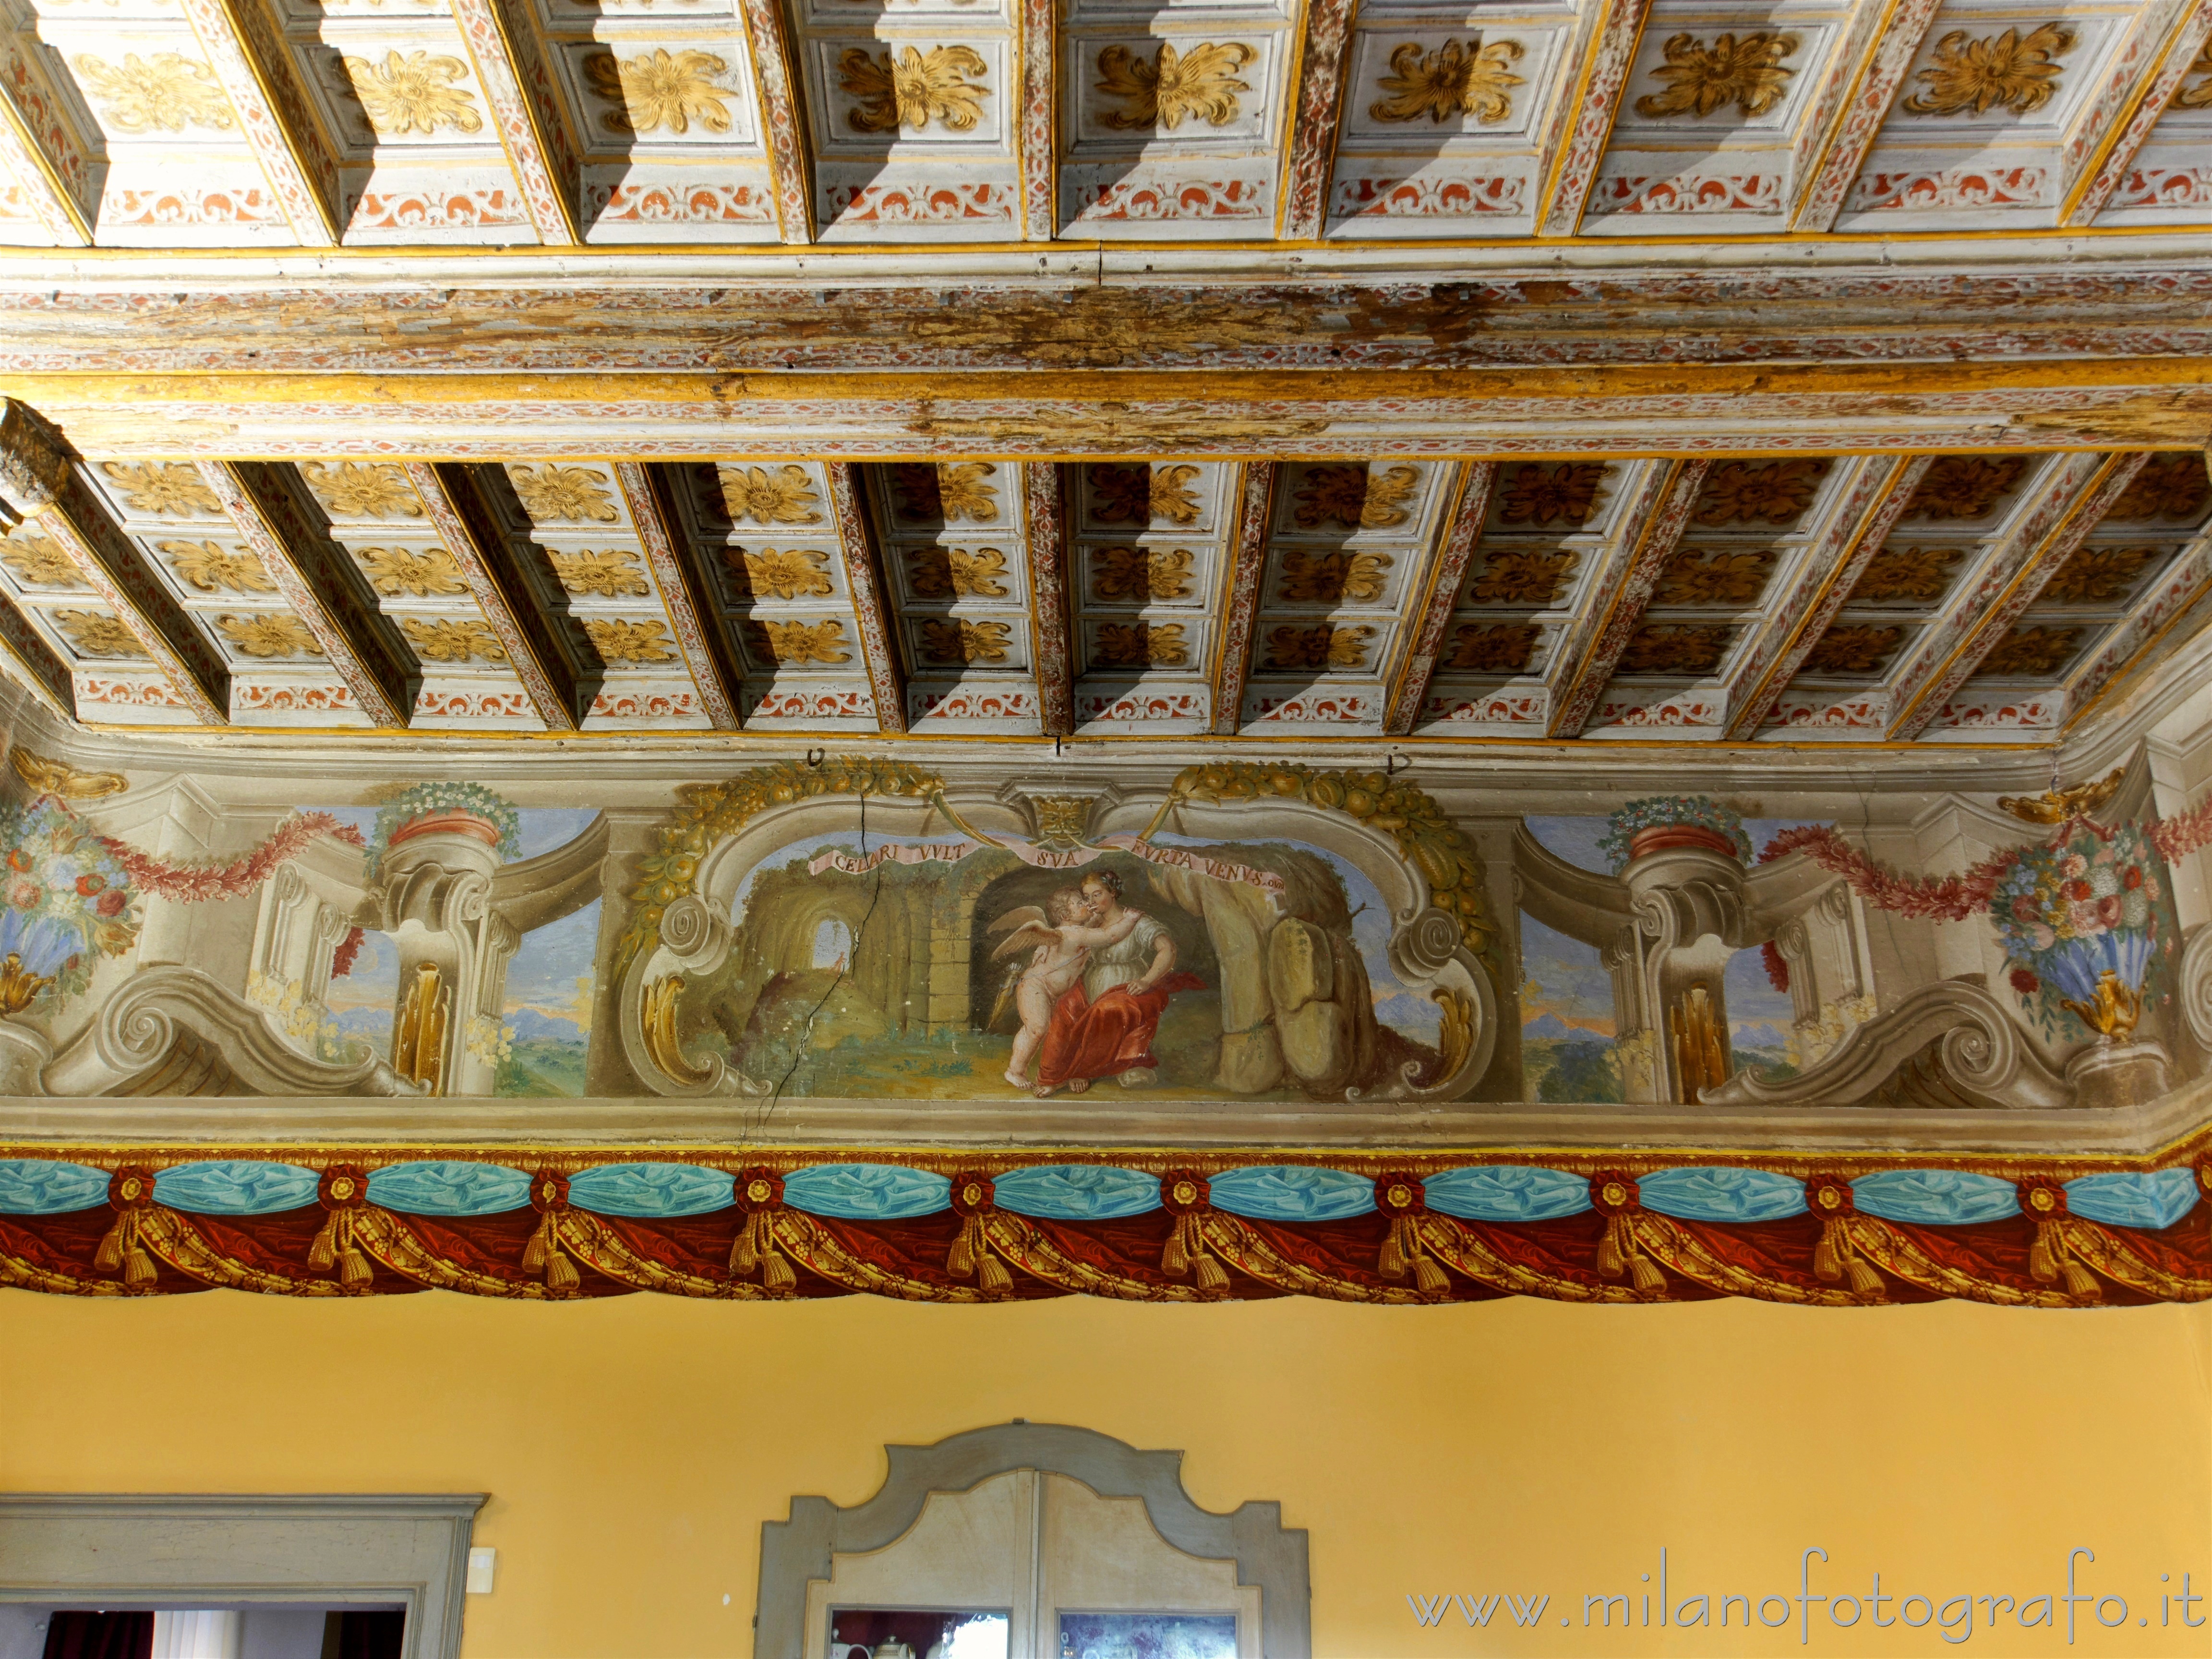 Cossato (Biella, Italy): Baroque decorations in one of the halls of the Castle of Castellengo - Cossato (Biella, Italy)